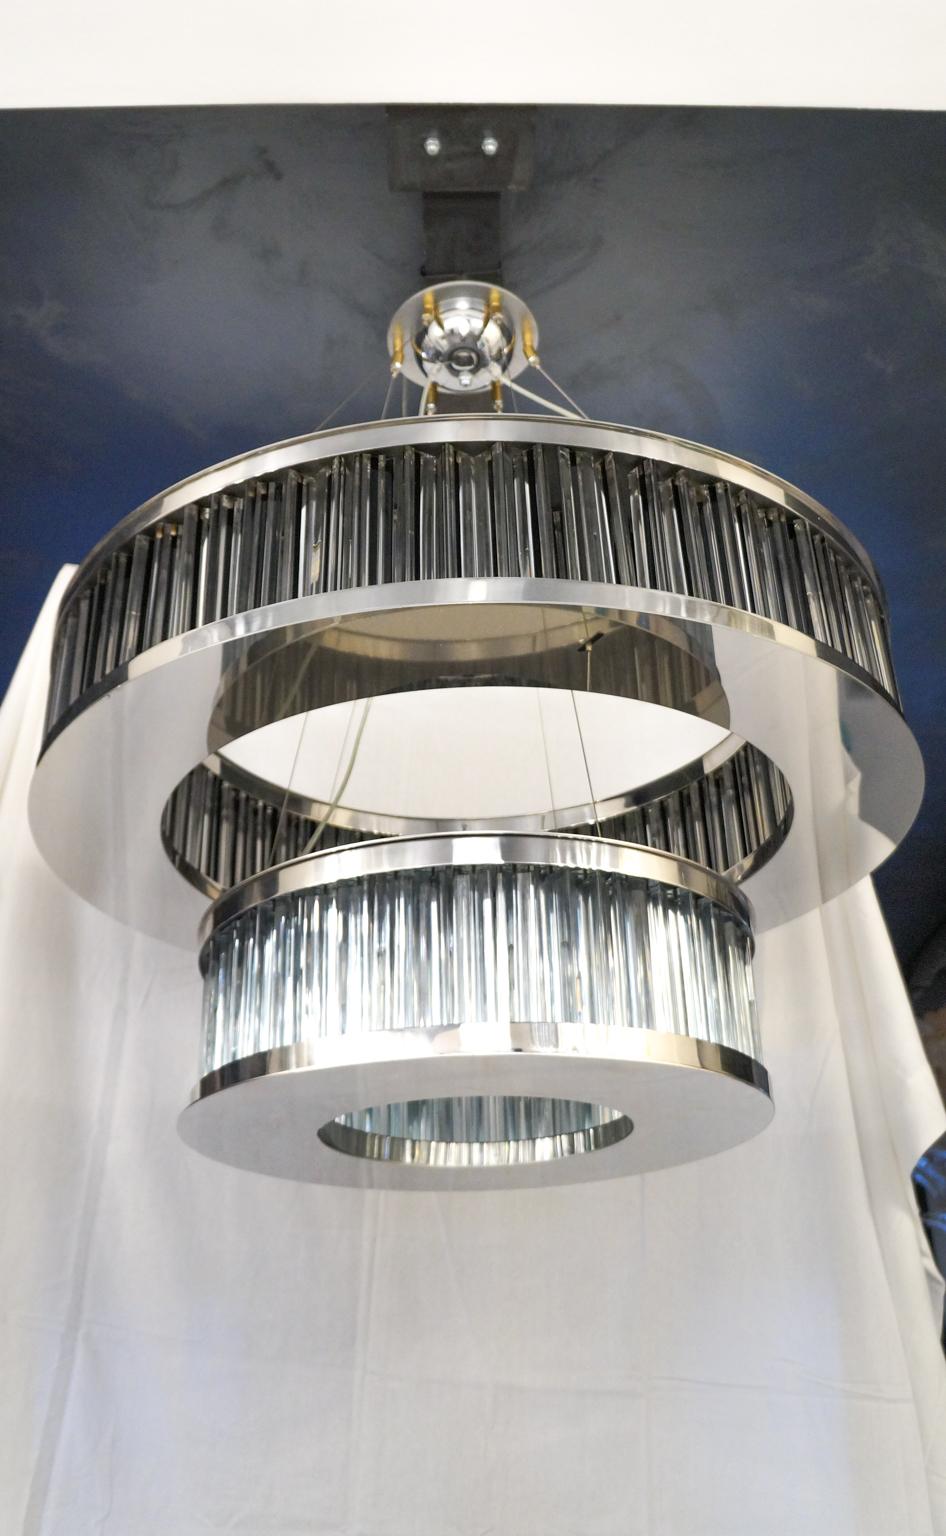 Certainement un lustre à effigie, qui est structuré en deux anneaux métalliques rappelant vaguement les satellites de la planète Saturne. Le premier anneau, le plus grand, est composé de 150 éléments en verre tryedral, tandis que le deuxième anneau